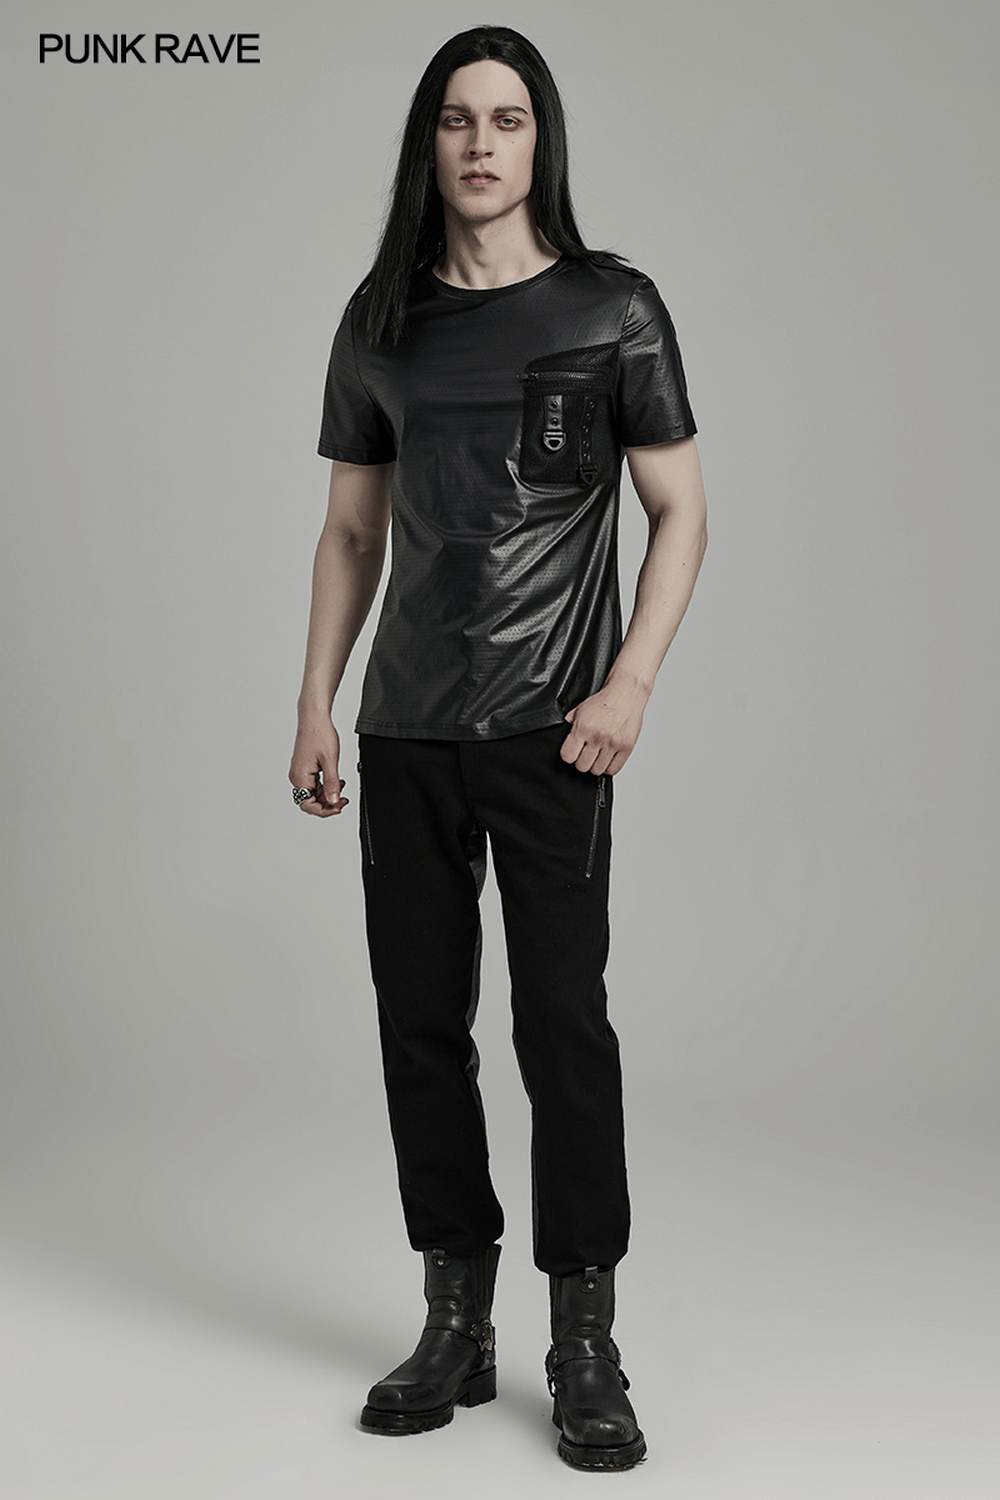 Camiseta Urbana de Hombre de Malla Negra con Bolsillo Frontal Perforado